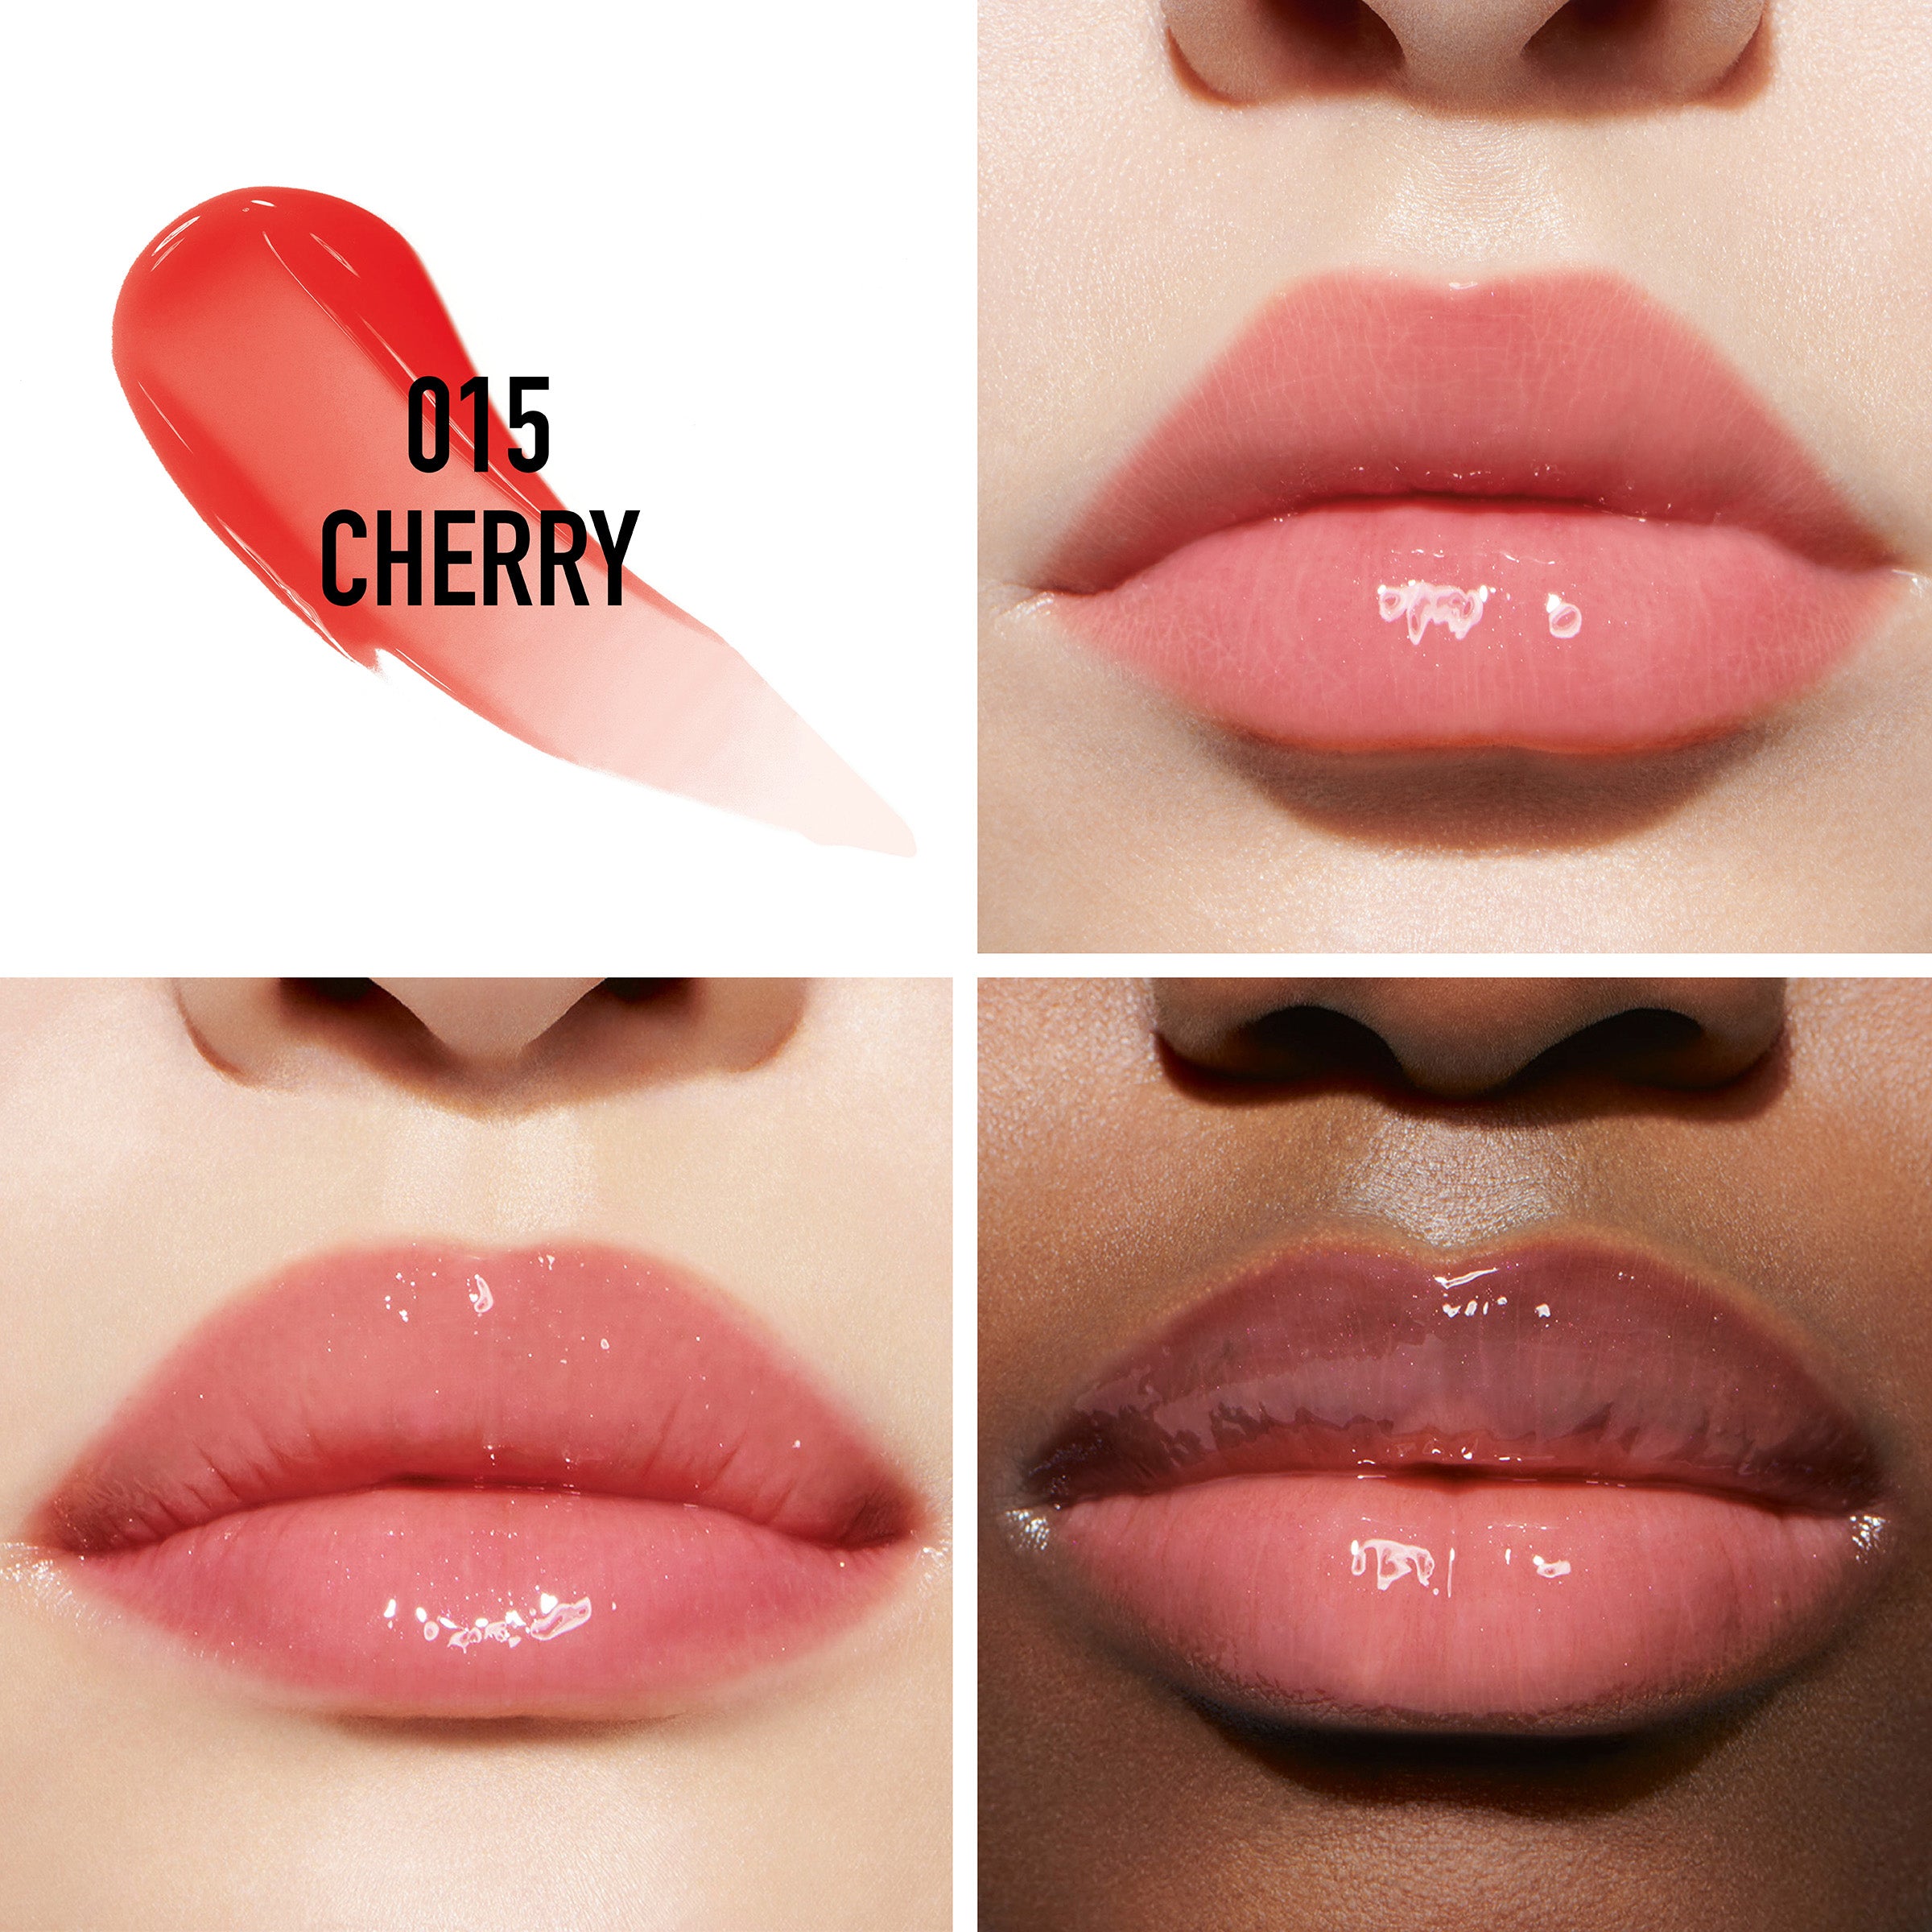 015-Cherry